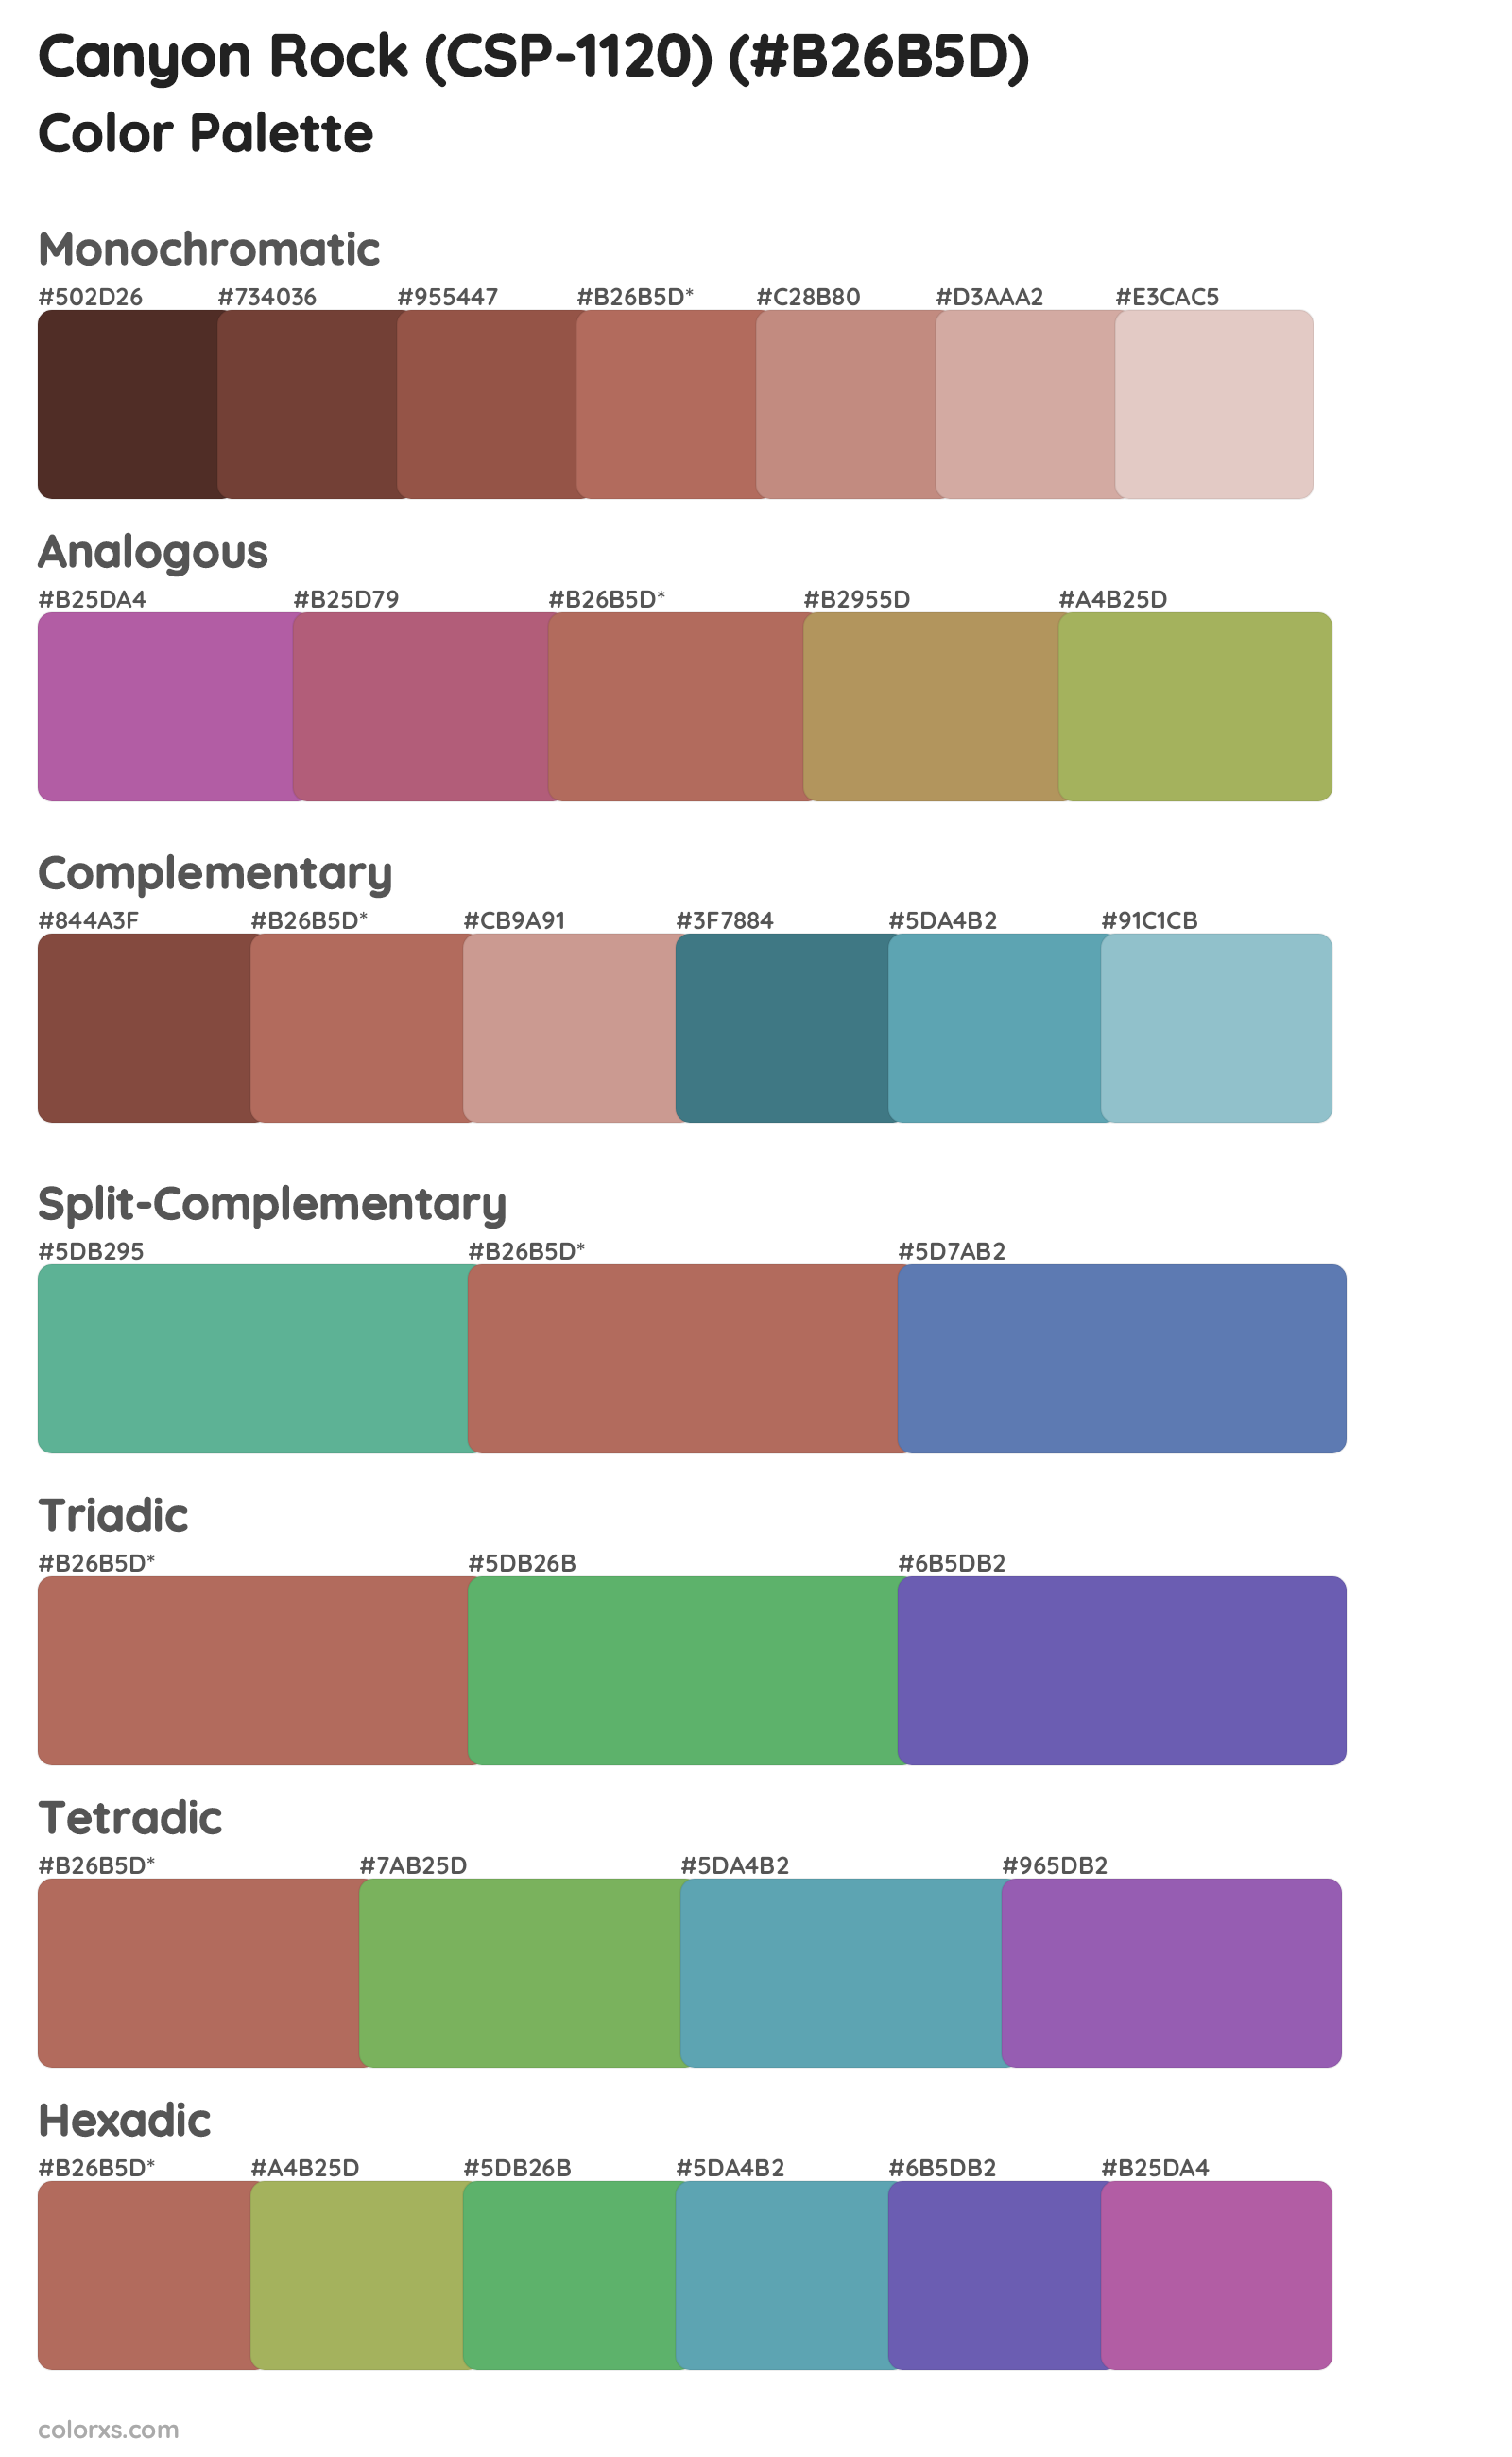 Canyon Rock (CSP-1120) Color Scheme Palettes